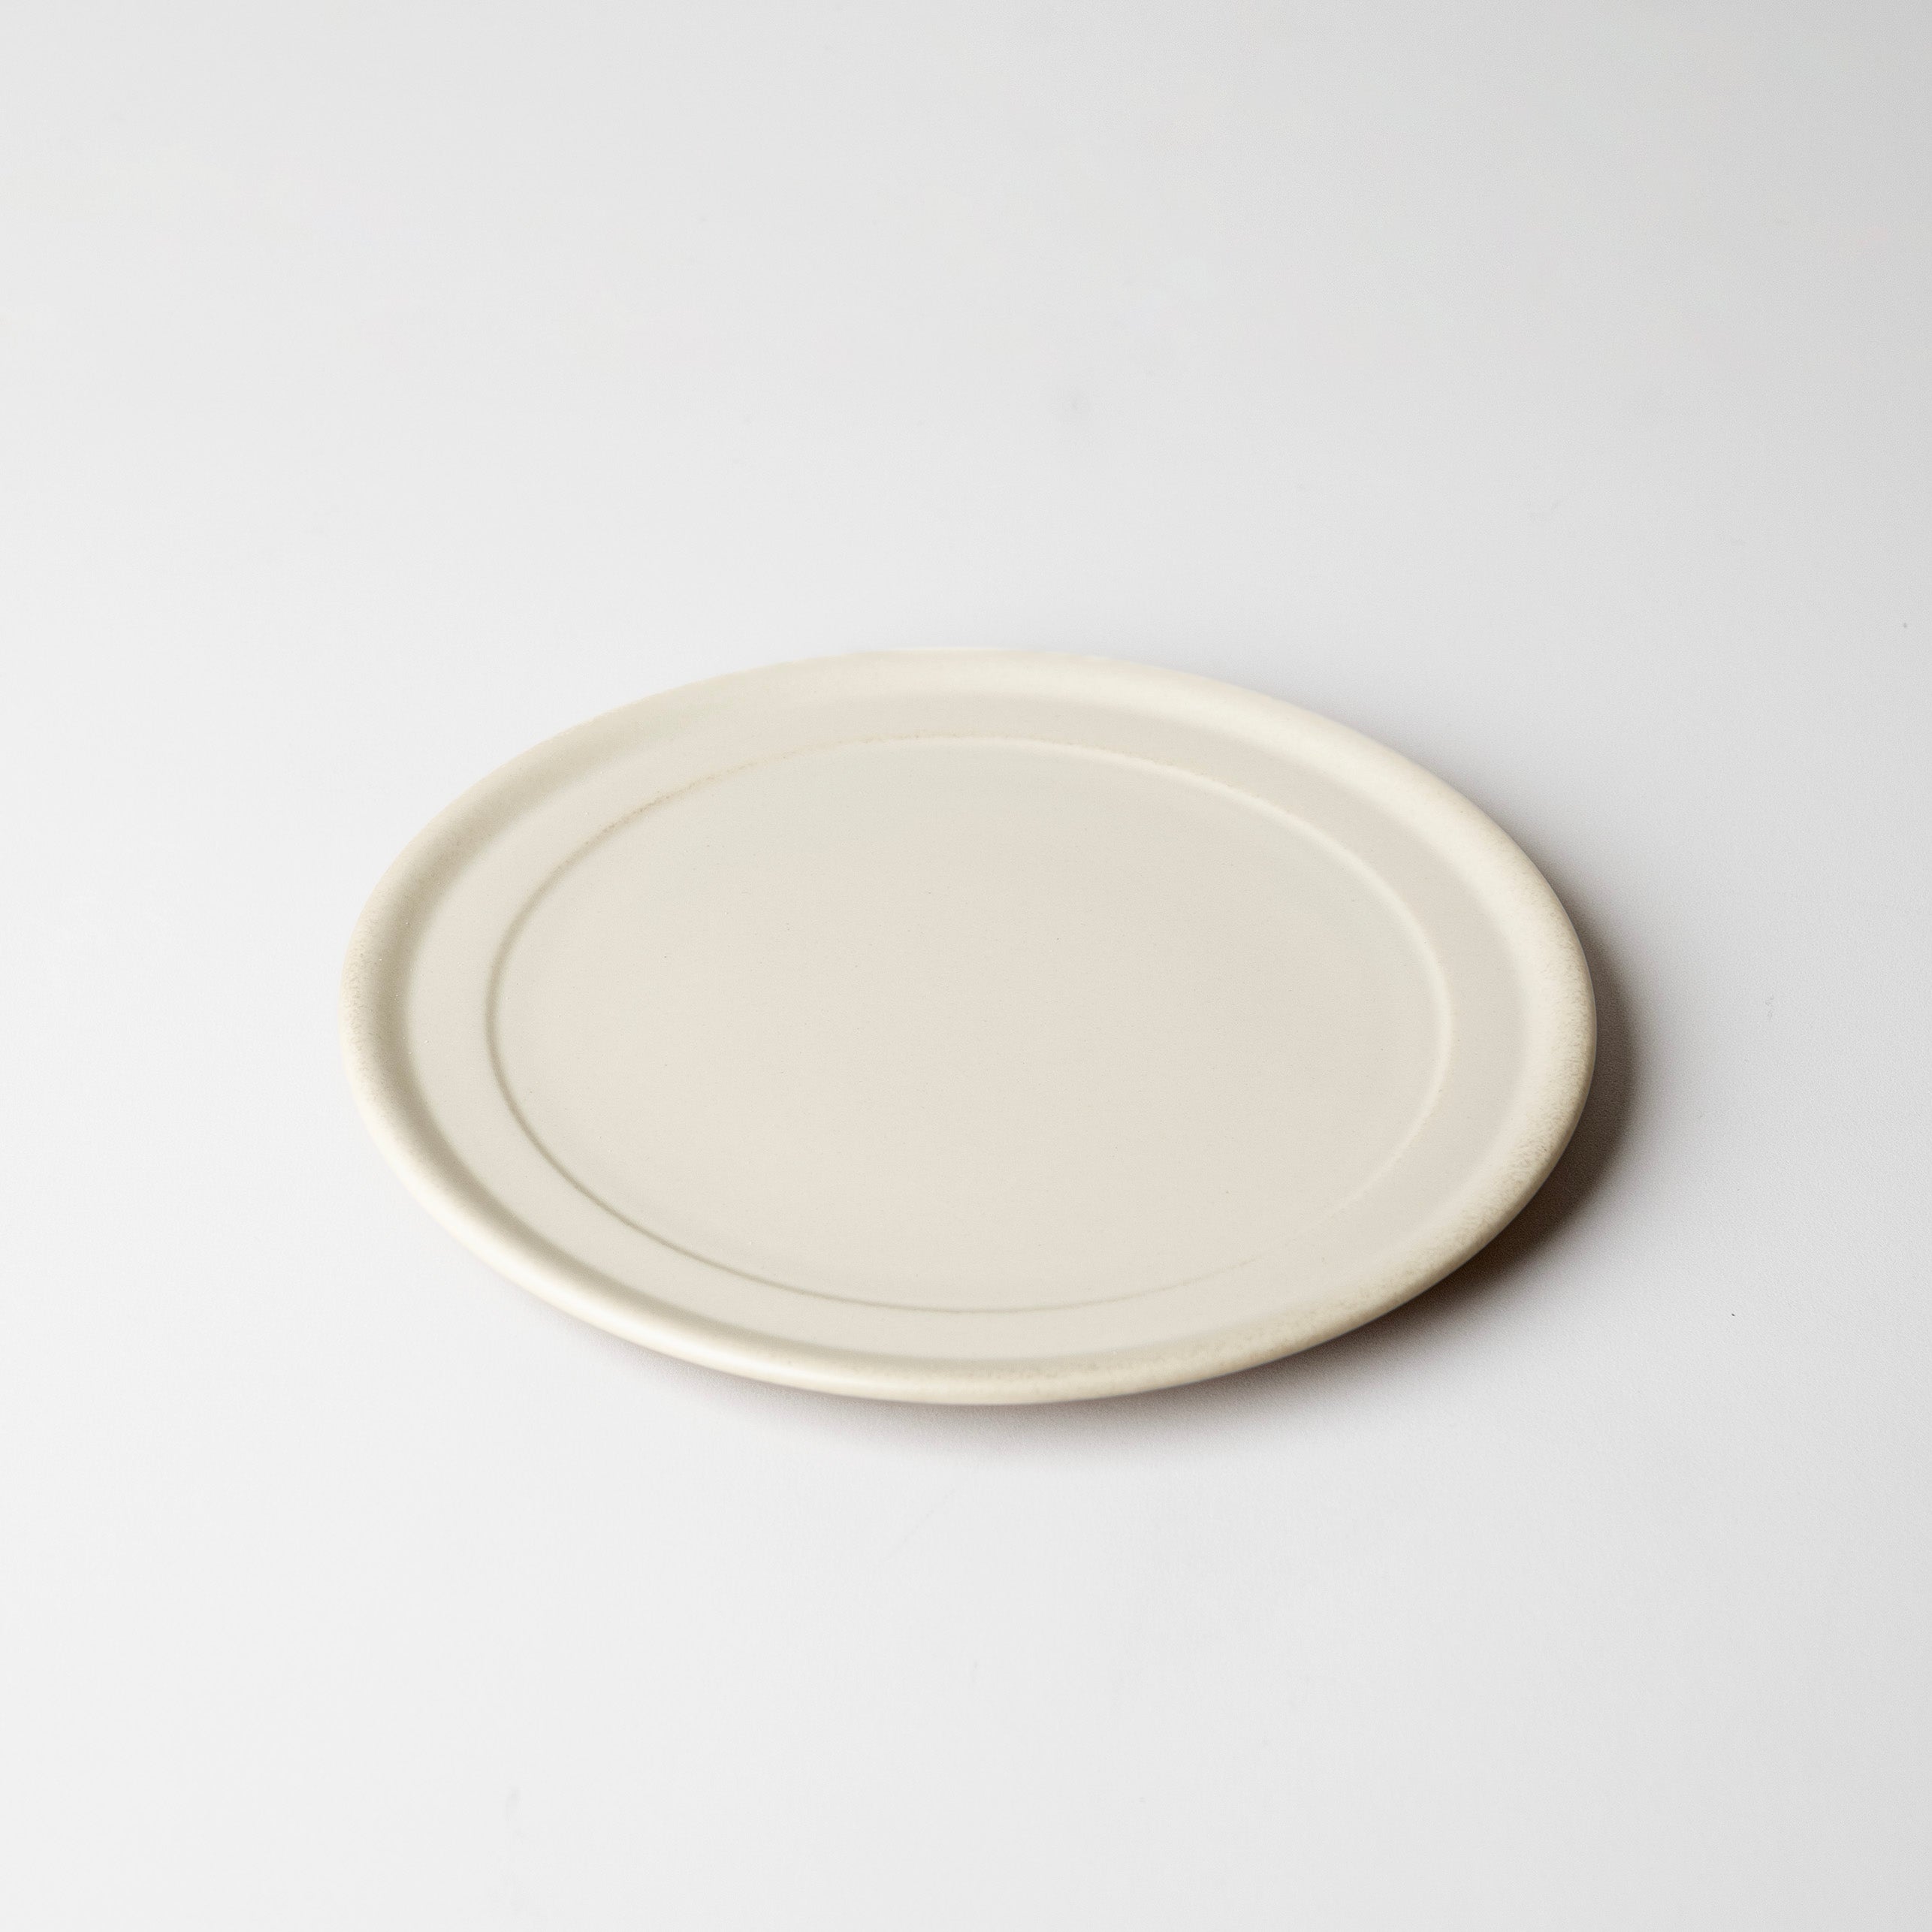 bico-plate-white-1_4a6575bd-22cf-4064-885e-ca3419a46880.jpg